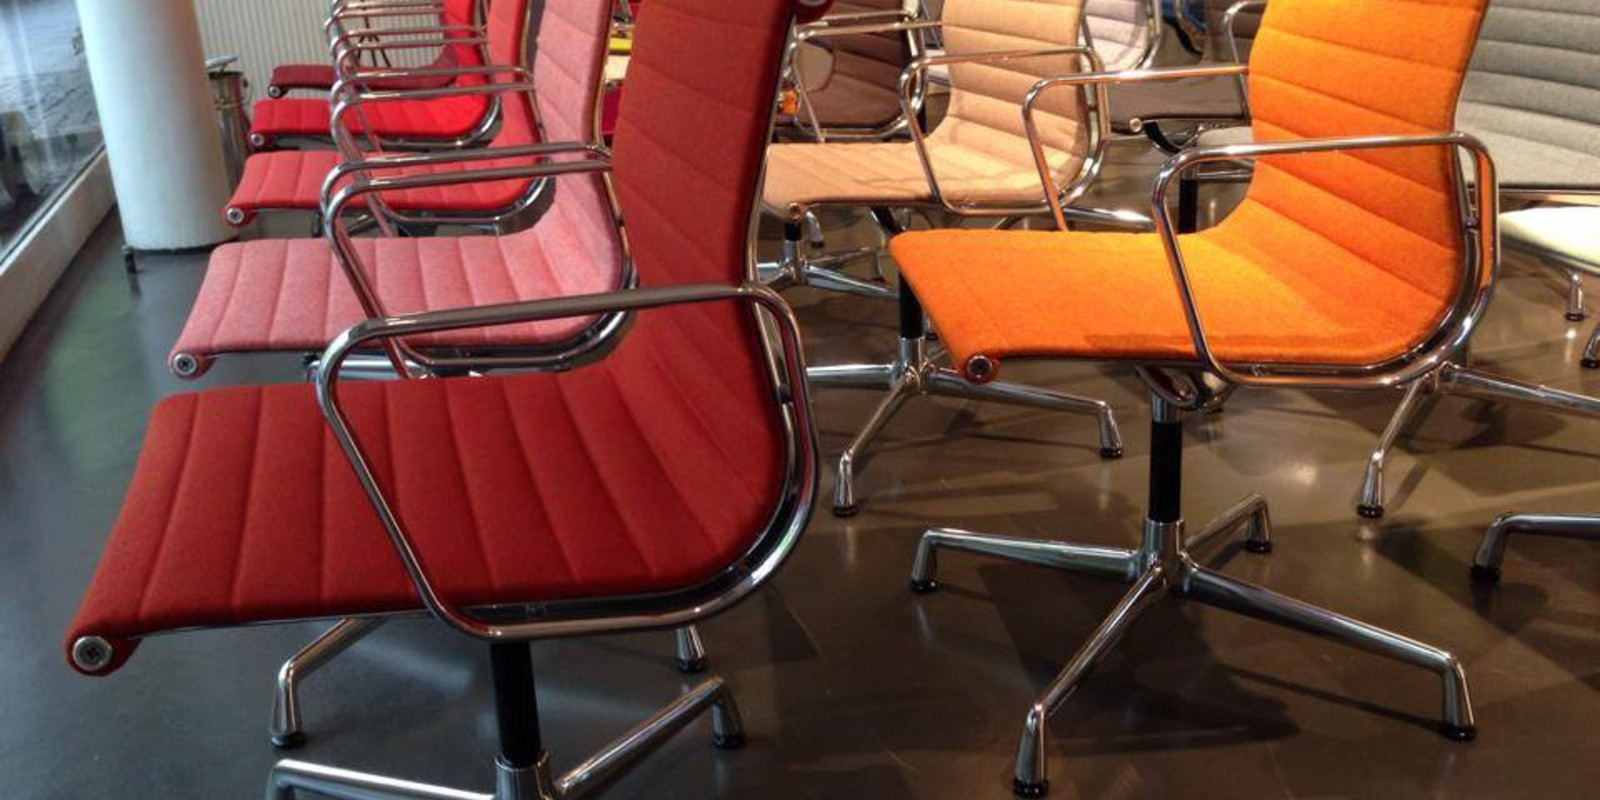 Vitra Aluminium Chairs Bild 1 Bild 1